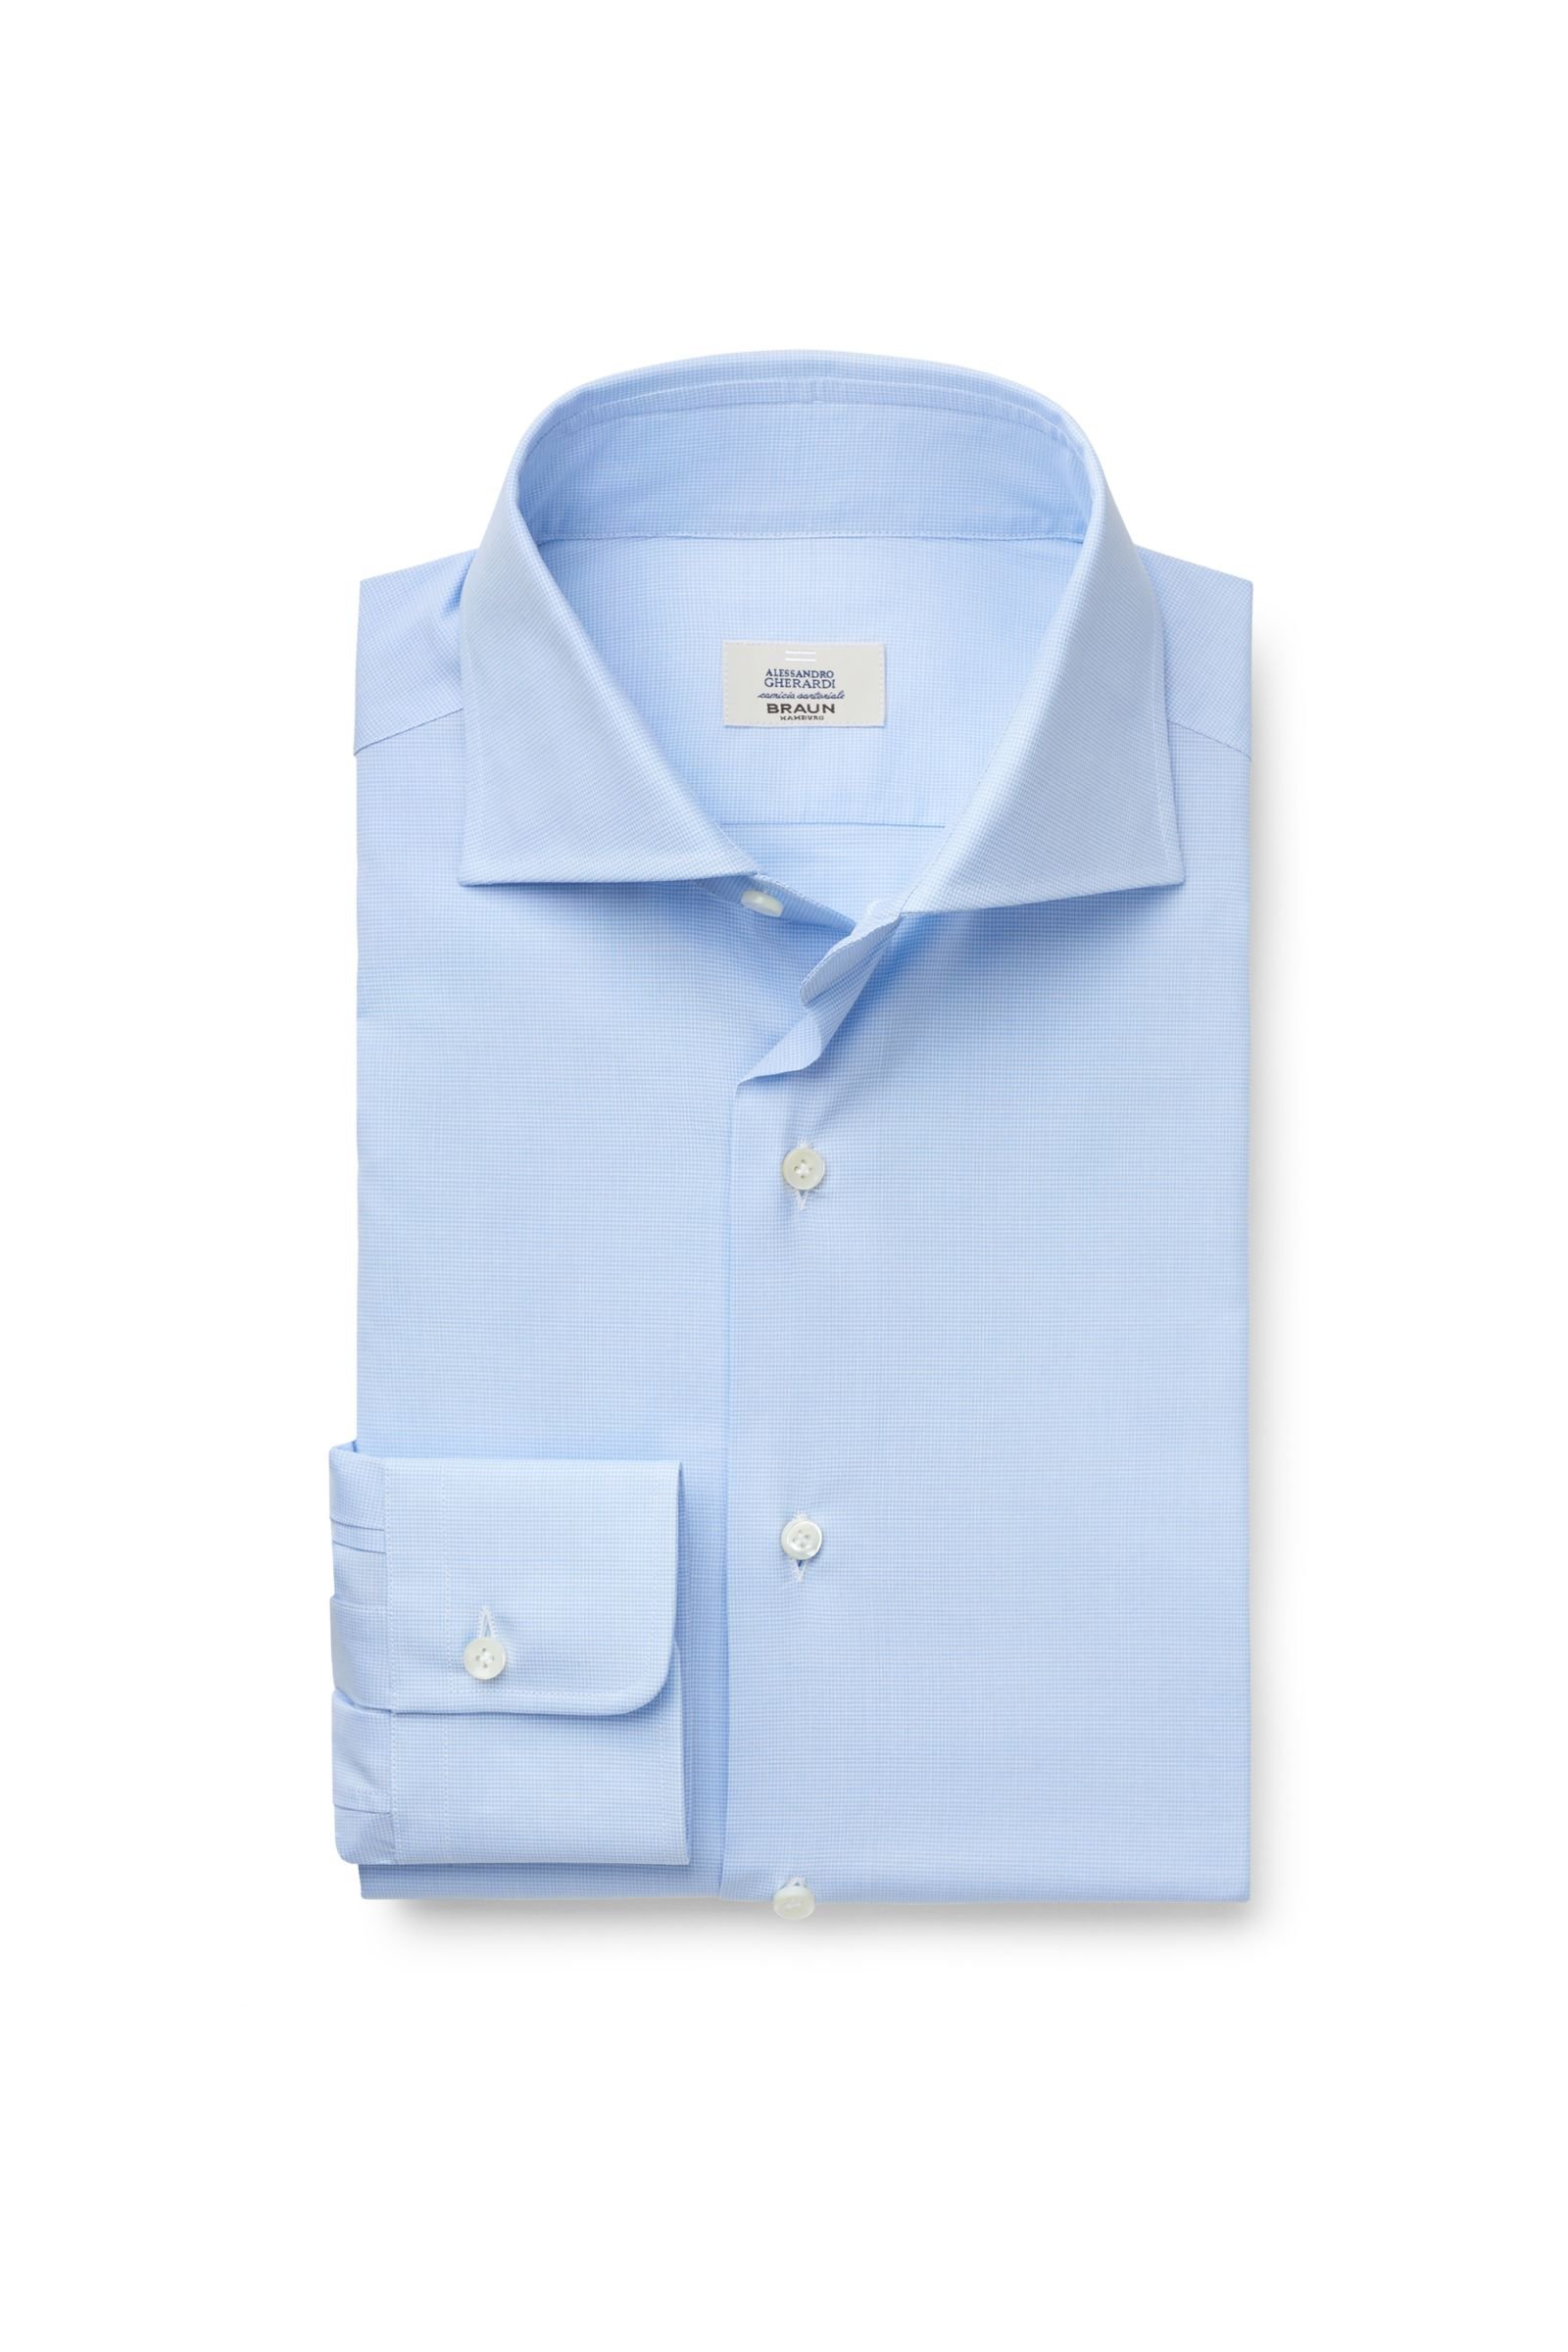 Business shirt shark collar light blue patterned